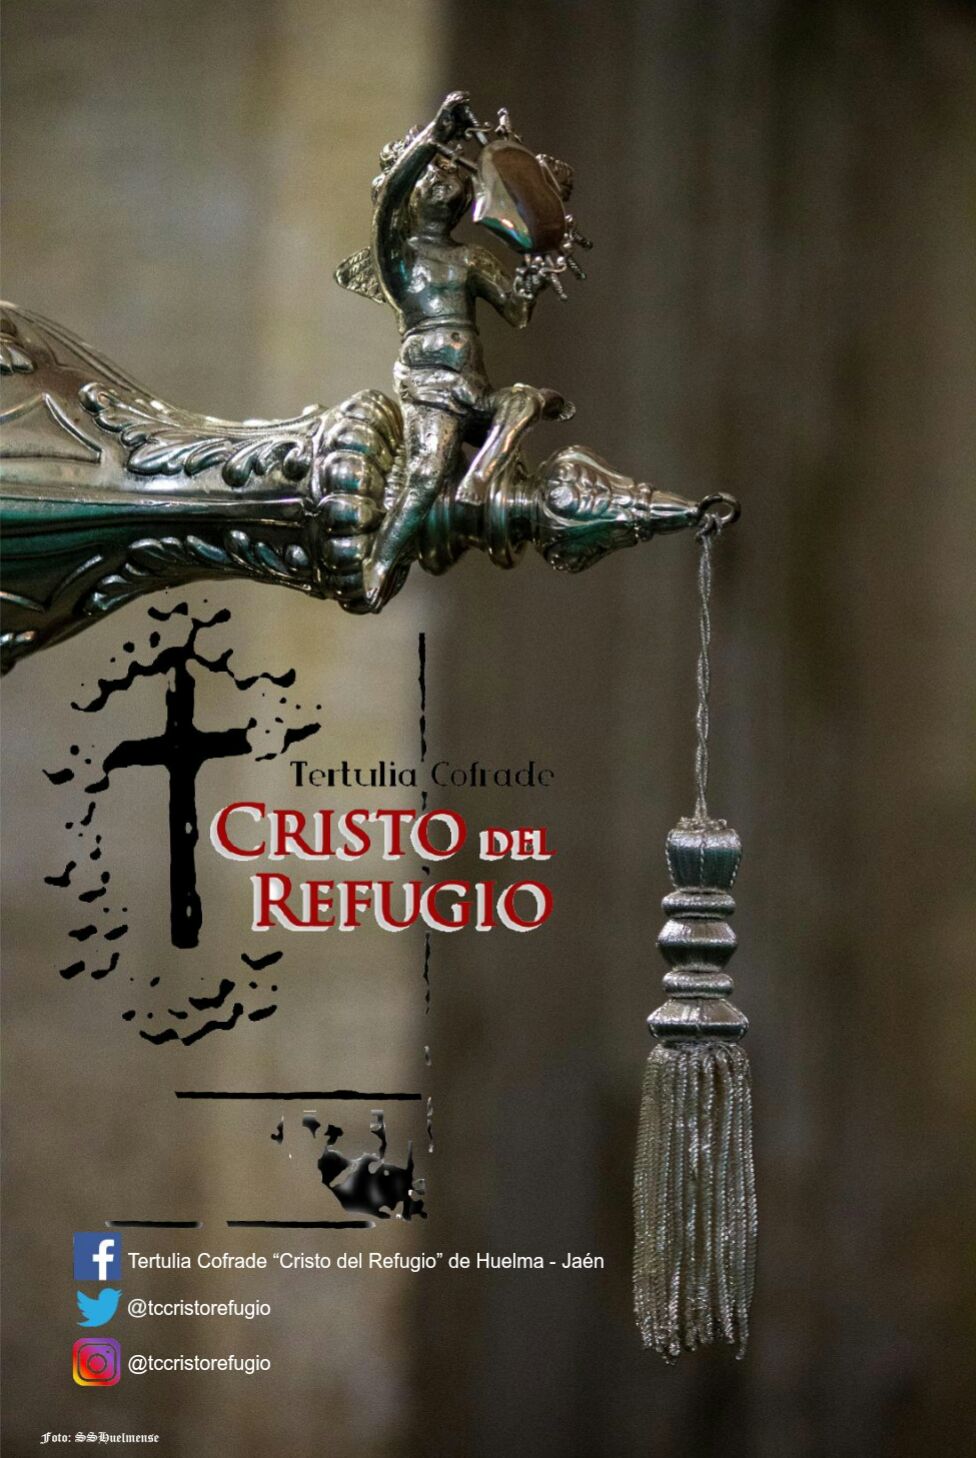 ASOCIACION TERTULIA COFRADE "CRISTO DEL REFUGIO" DE HUELMA